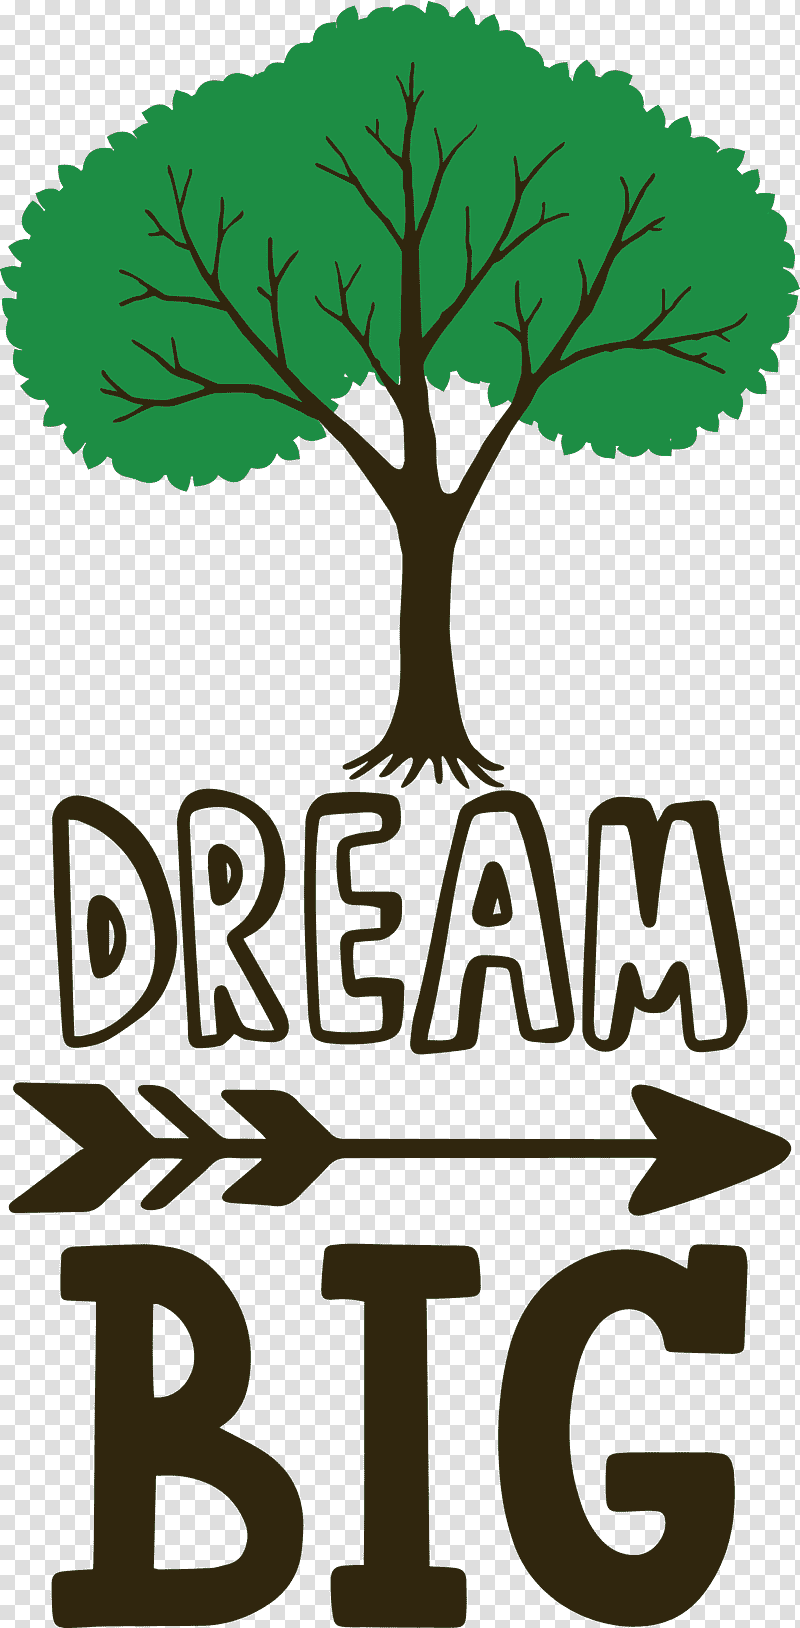 Dream Big, Leaf, Plant Stem, Logo, Tree, Green, Meter transparent background PNG clipart